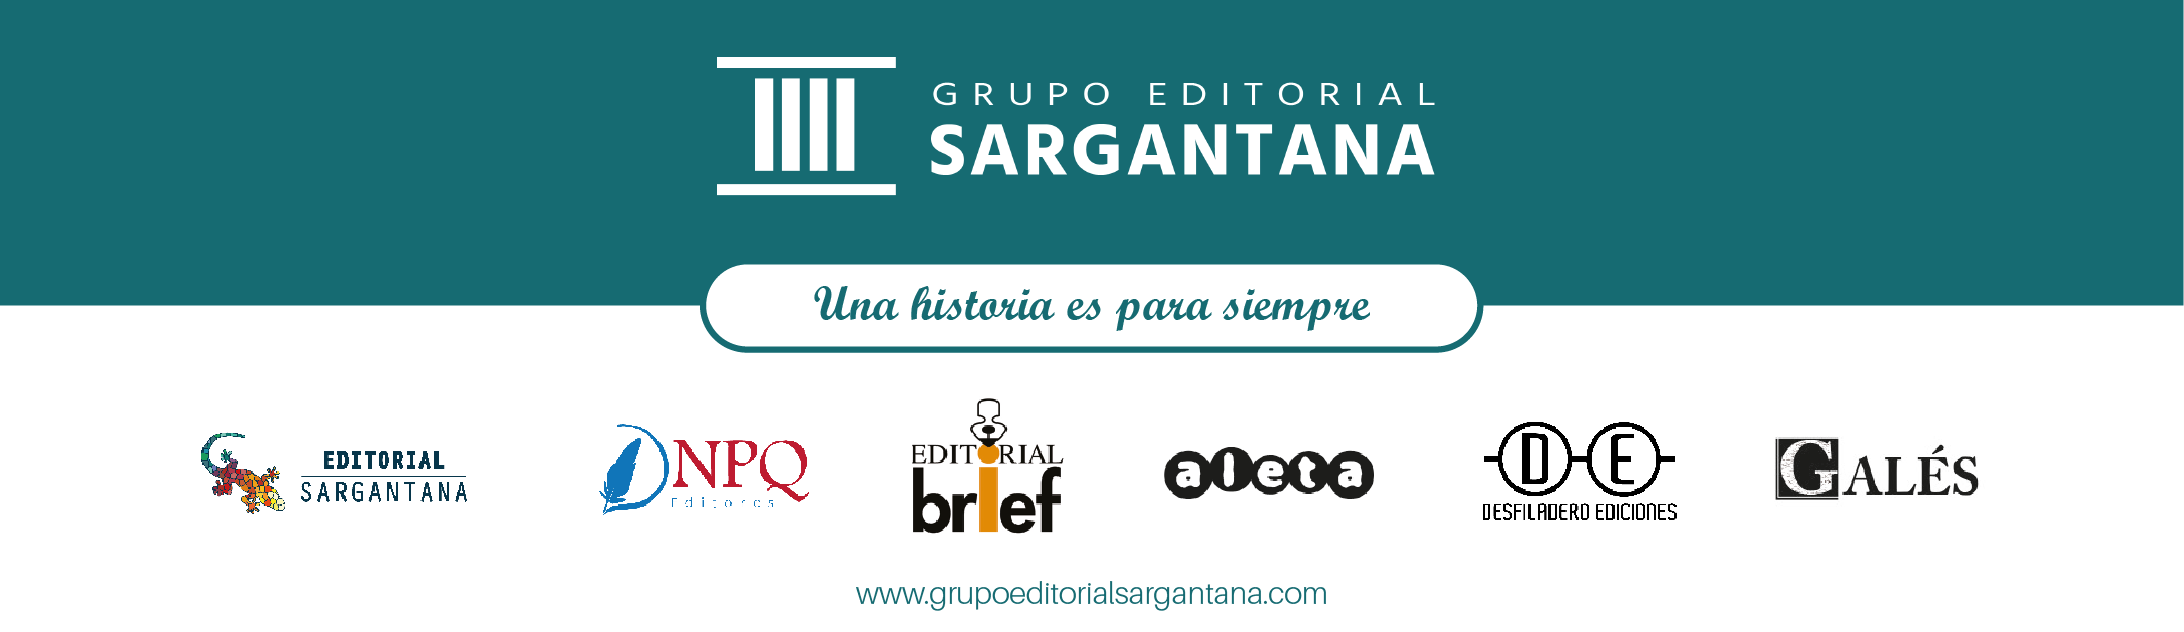 Grupo Editorial Sargantana